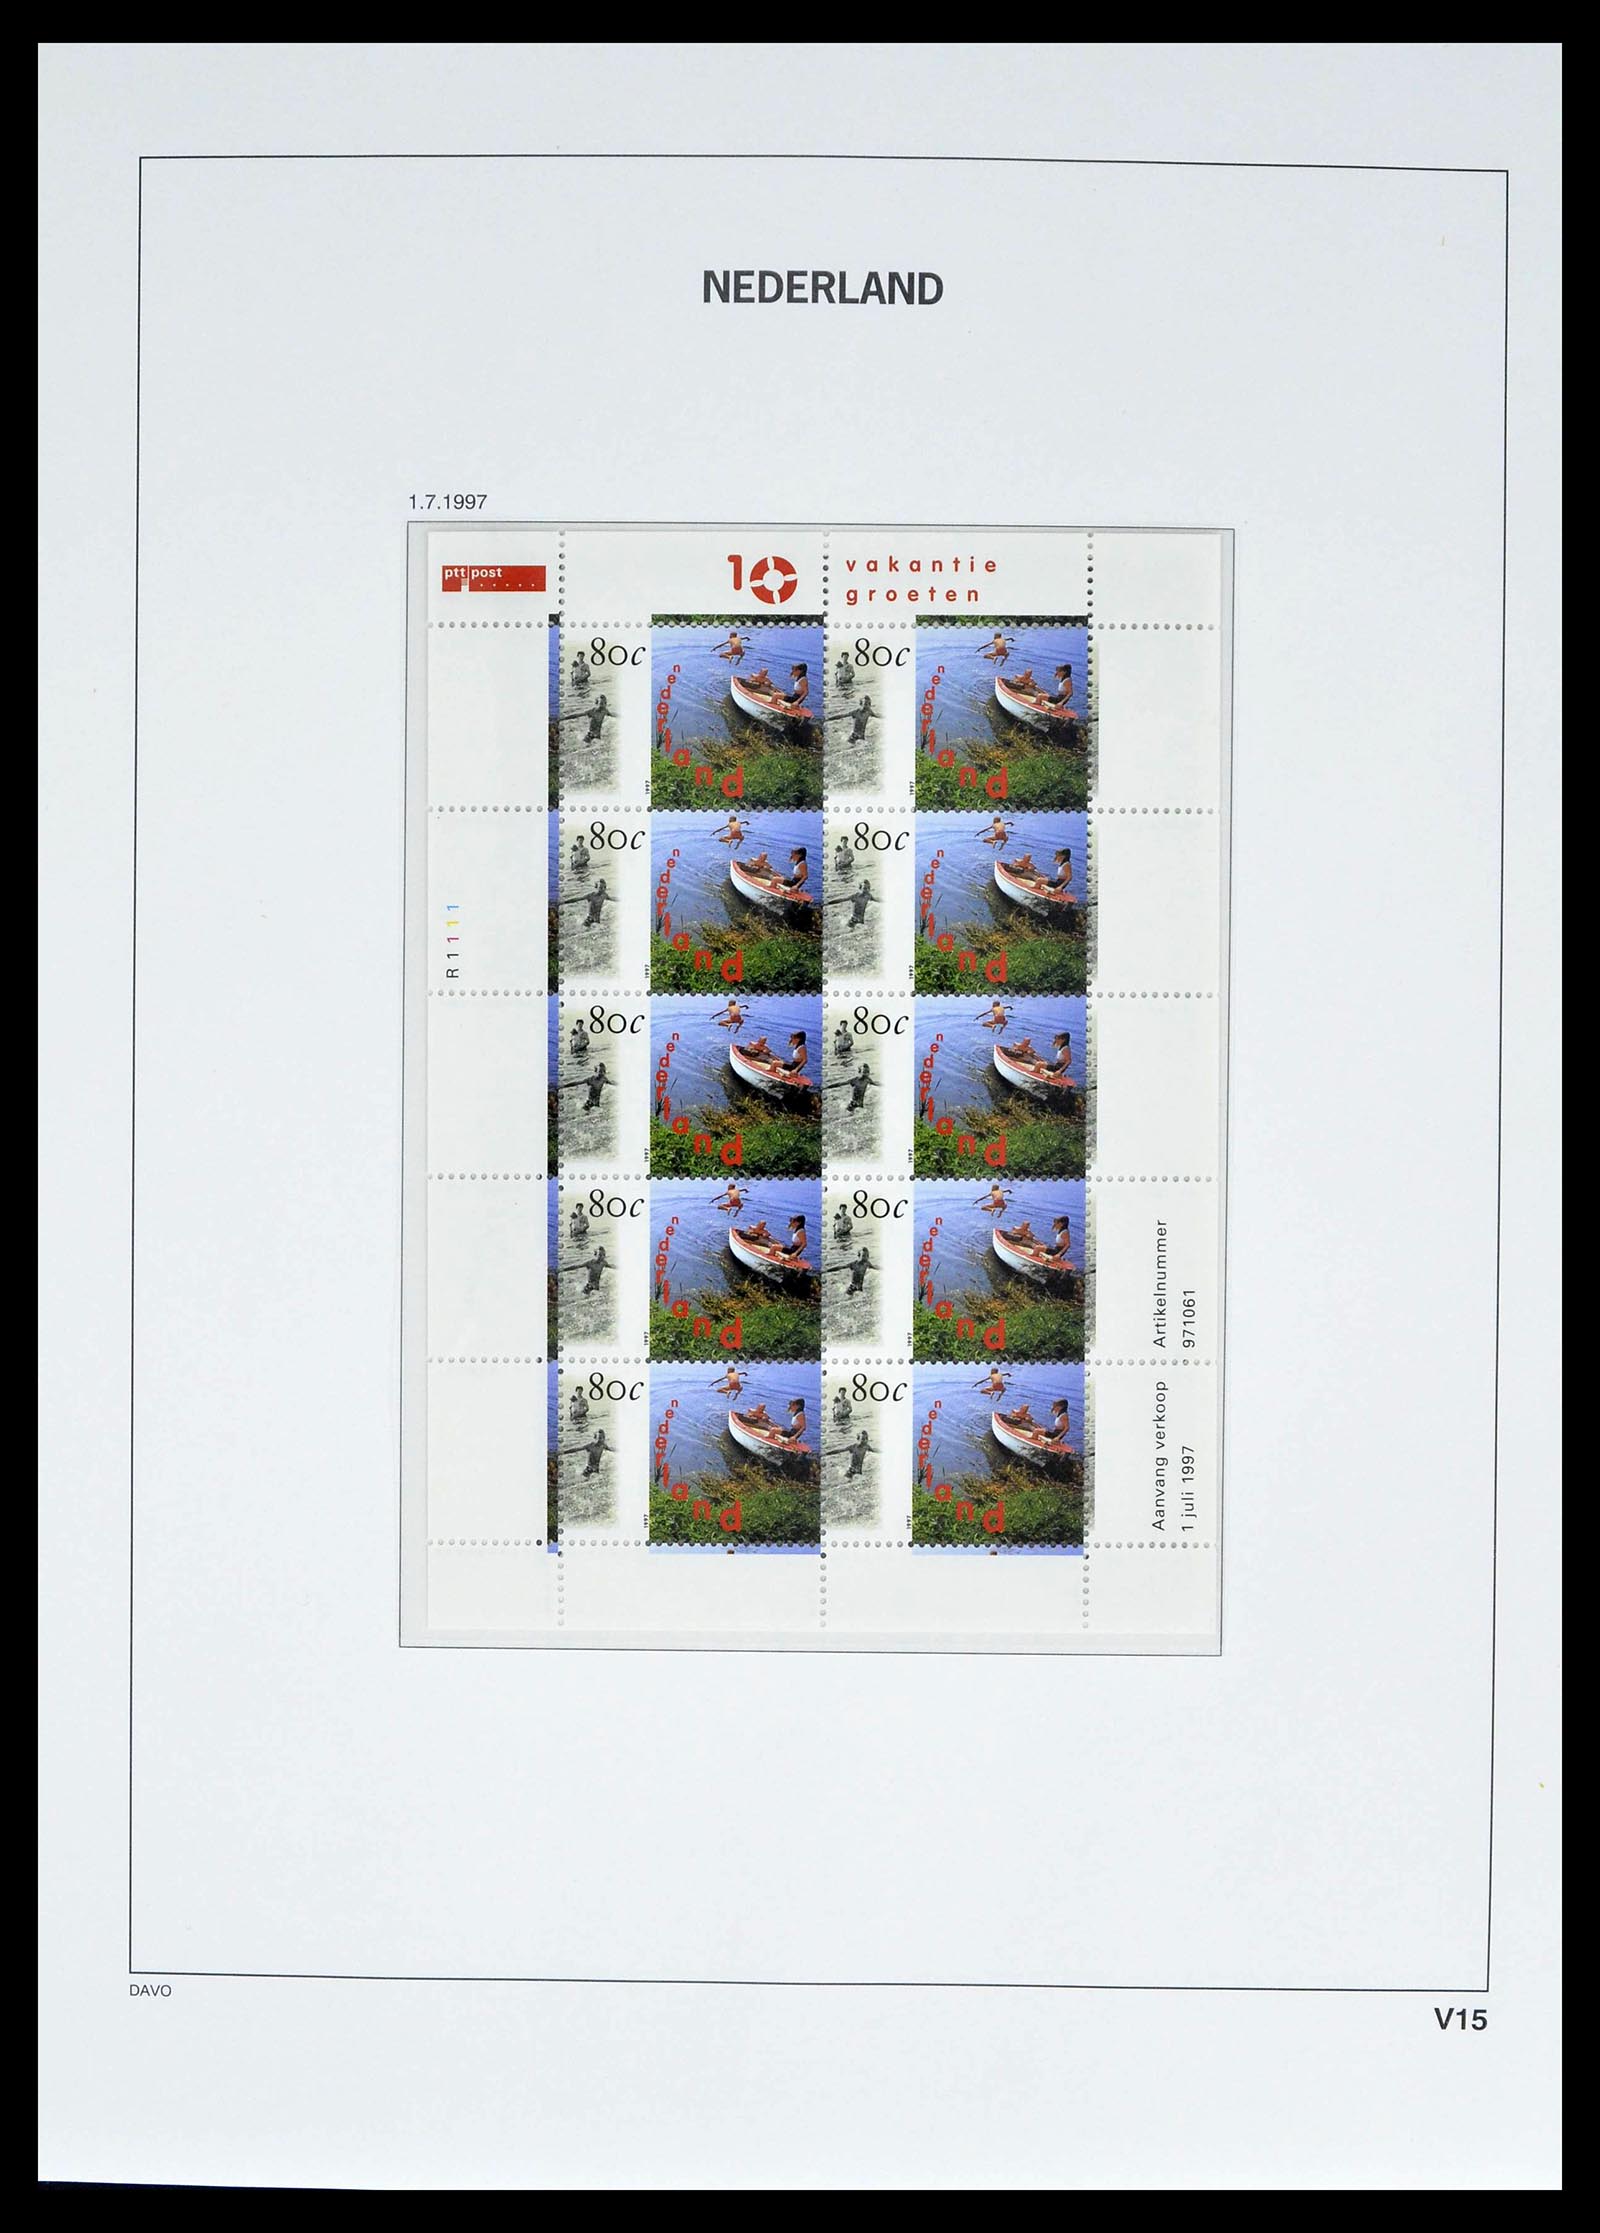 39134 0024 - Stamp collection 39134 Netherlands sheetlets 1992-2019!